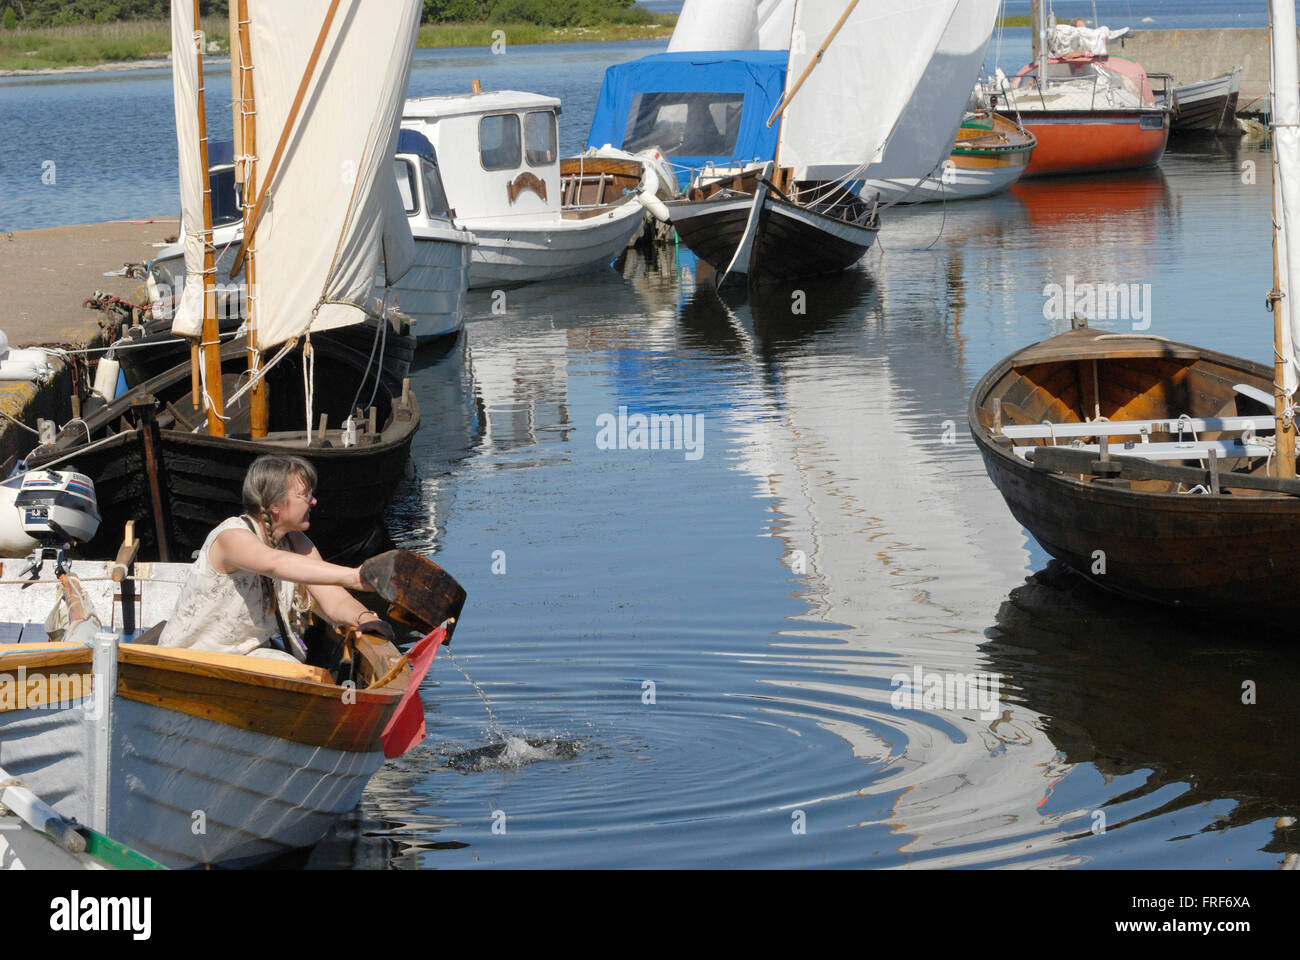 La Suède, l'île de Gotland : Vikings. - 05/08/2007 - Europe - dans un charmant port de pêche de l'île de Gotland, une femme s'écoule son boa Banque D'Images